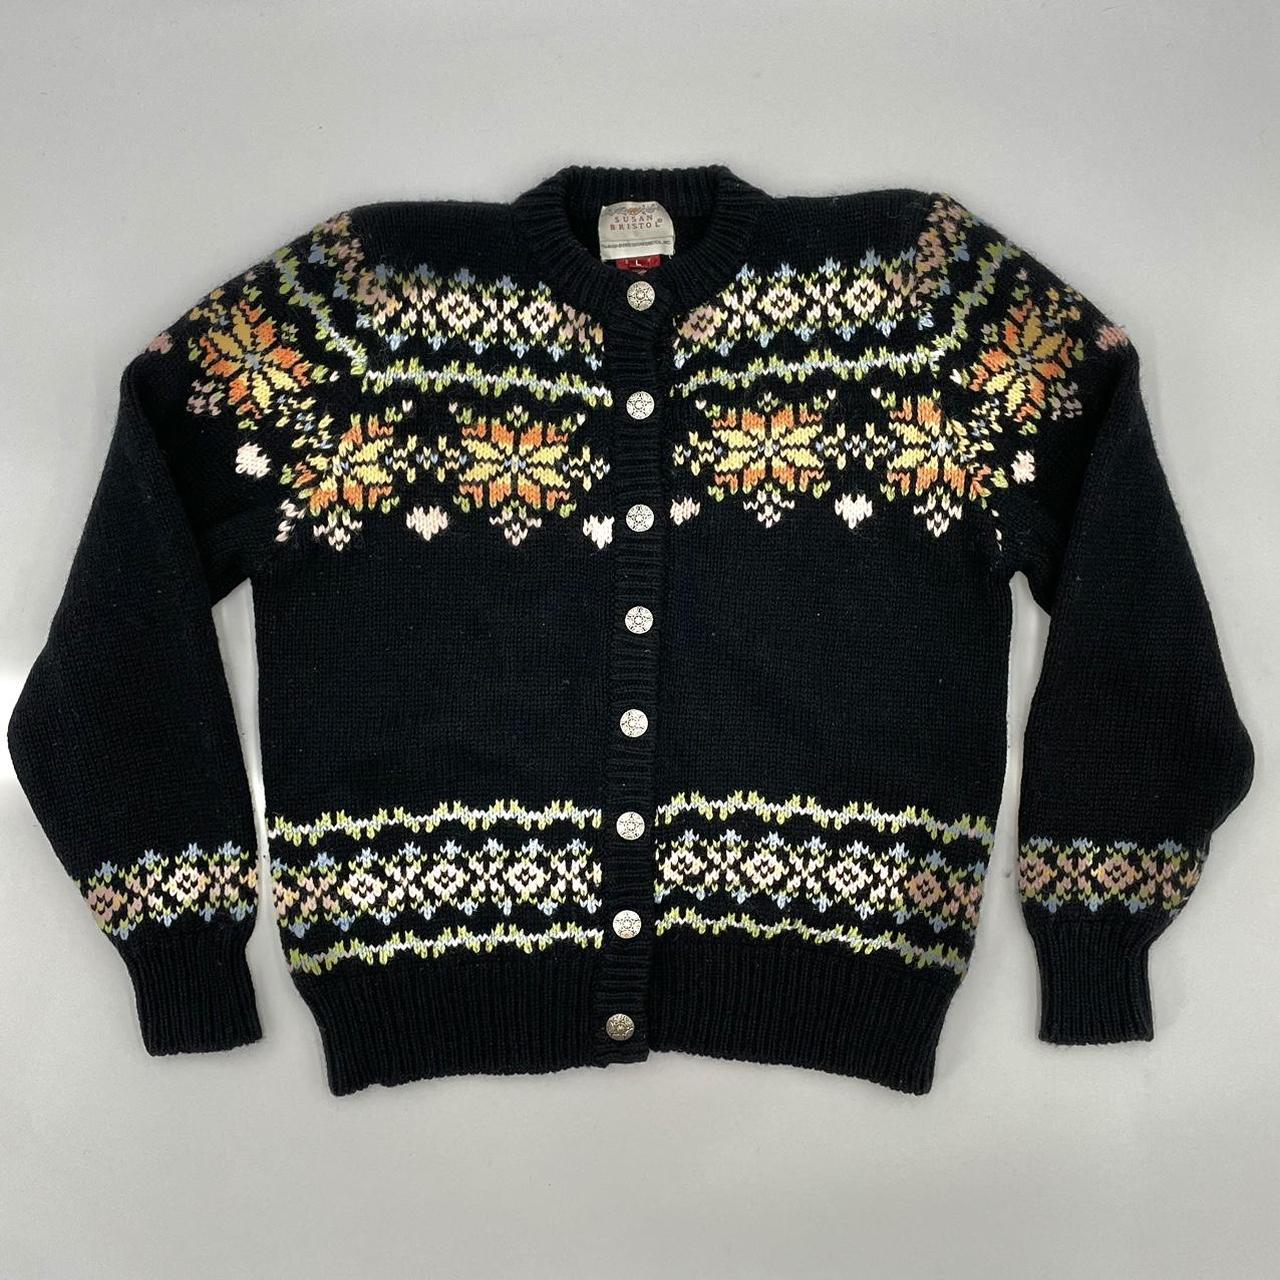 Vintage Fair Isle Cardigan Sweater Women Wool Floral... - Depop